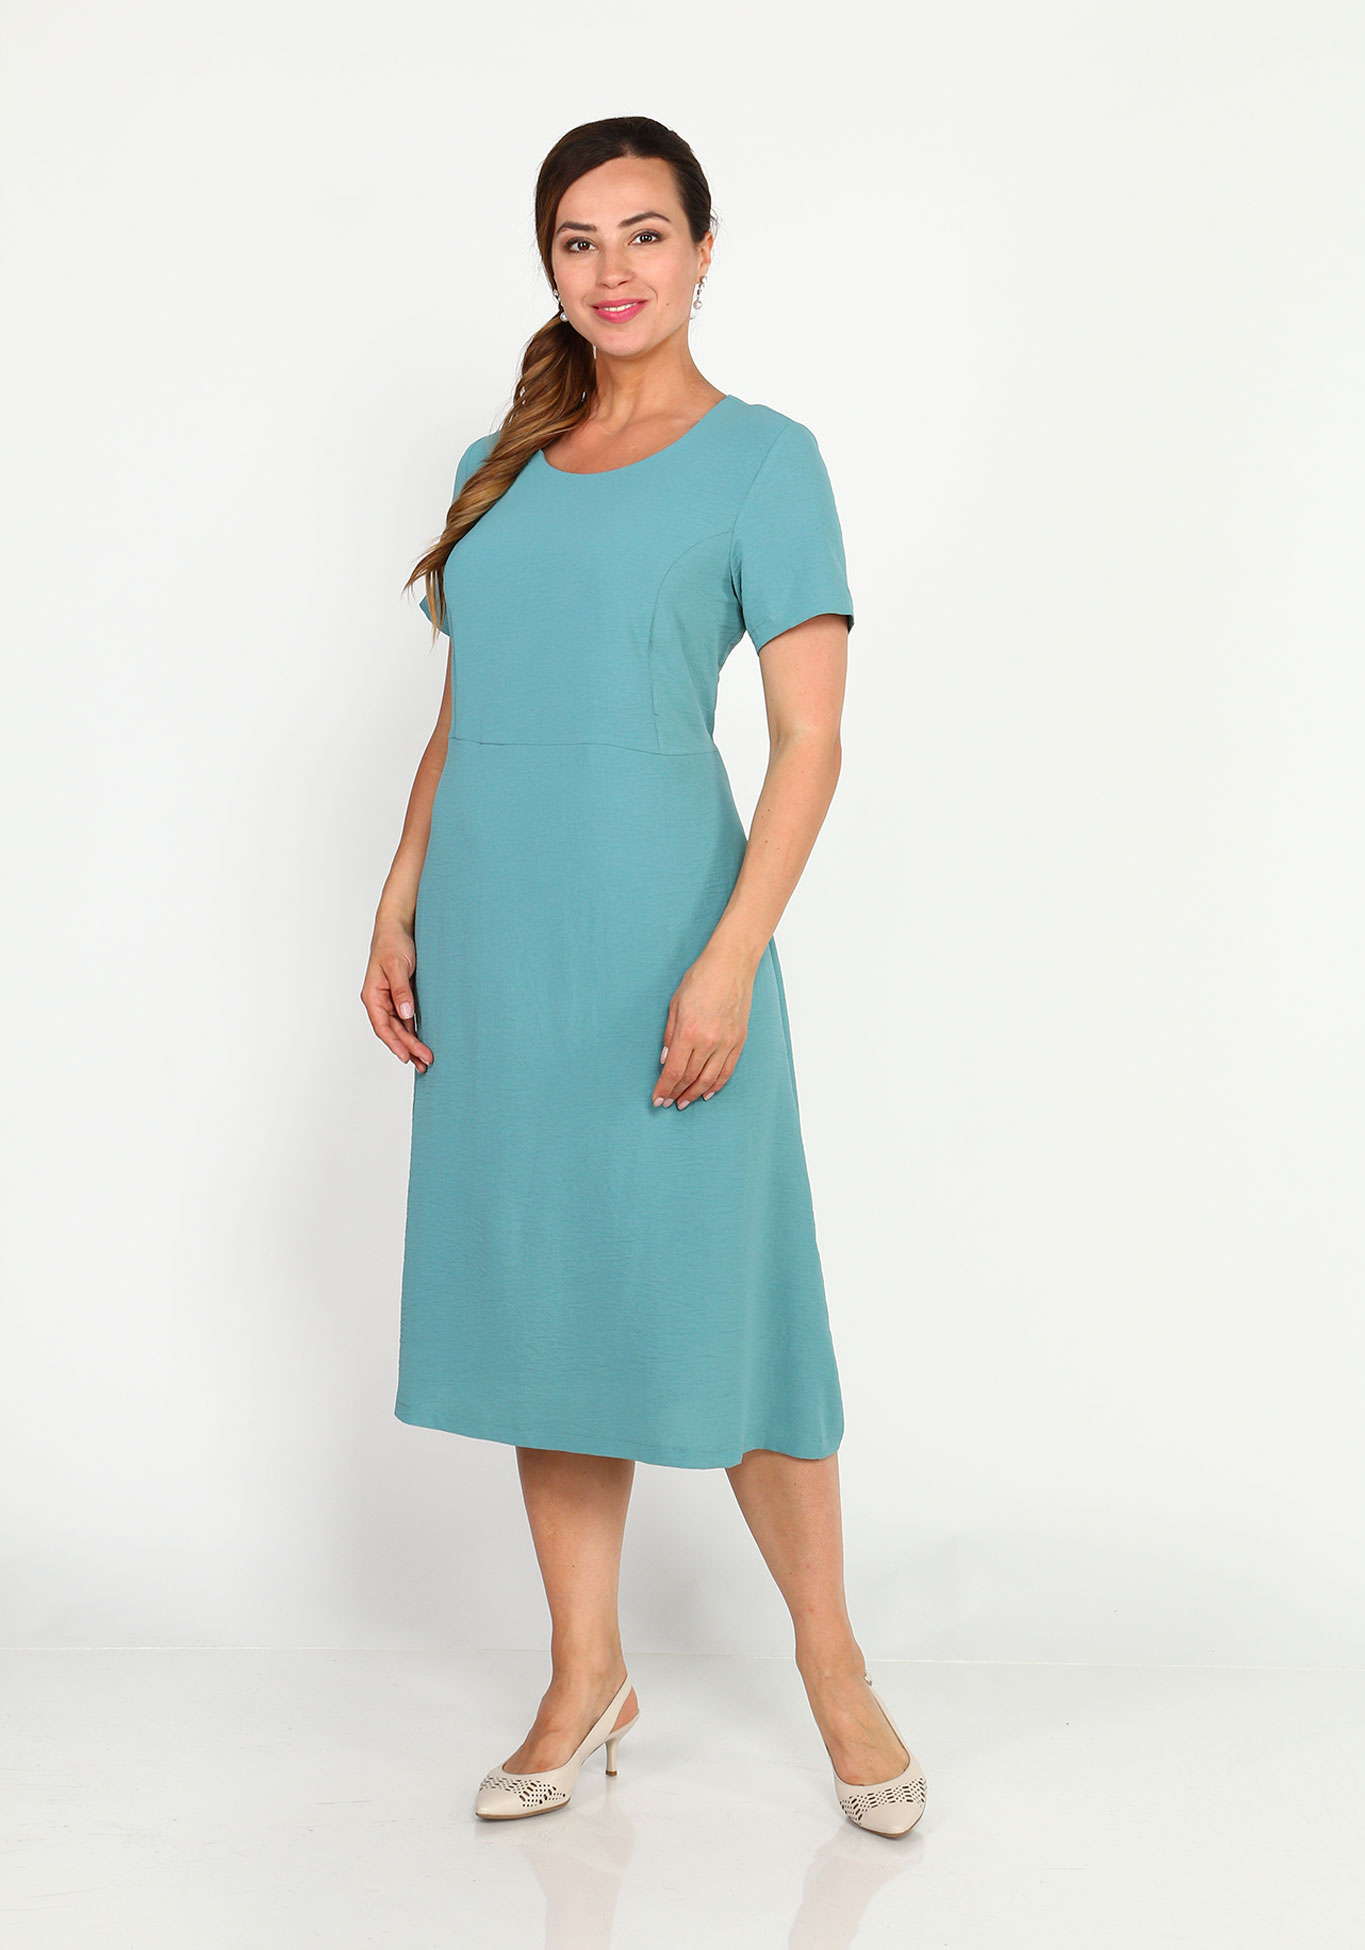 Платье с круглым вырезом и расклешенной юбкой Simple Story, размер 44, цвет голубой - фото 2